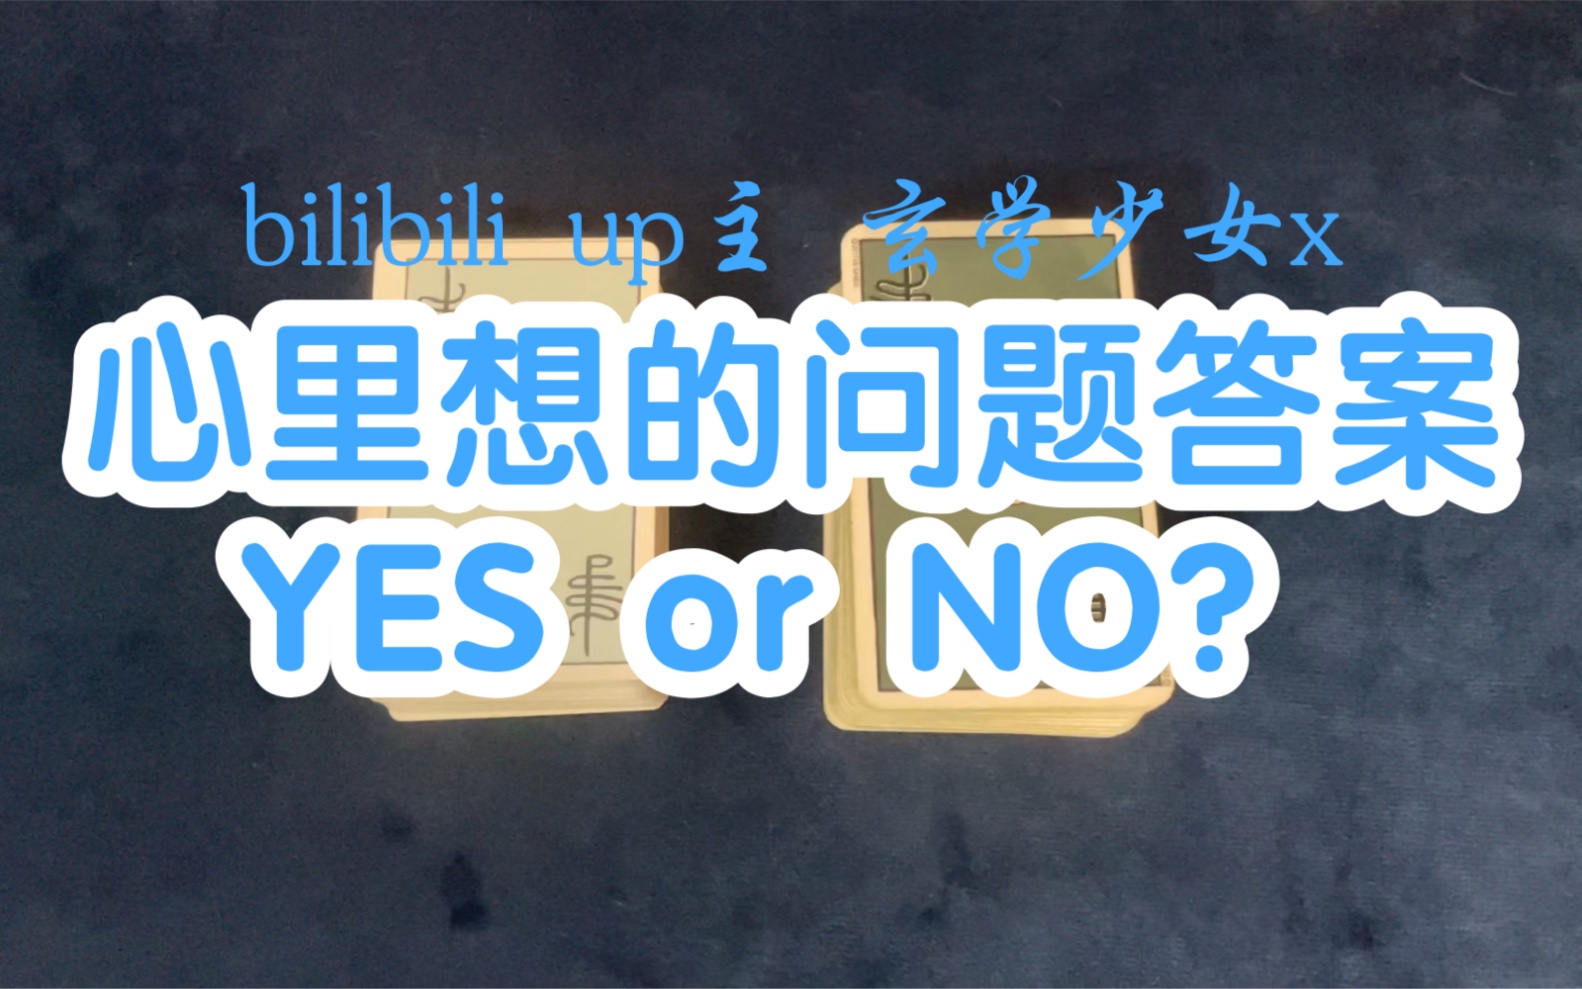 【大众占卜】心里想的问题答案YES or NO？